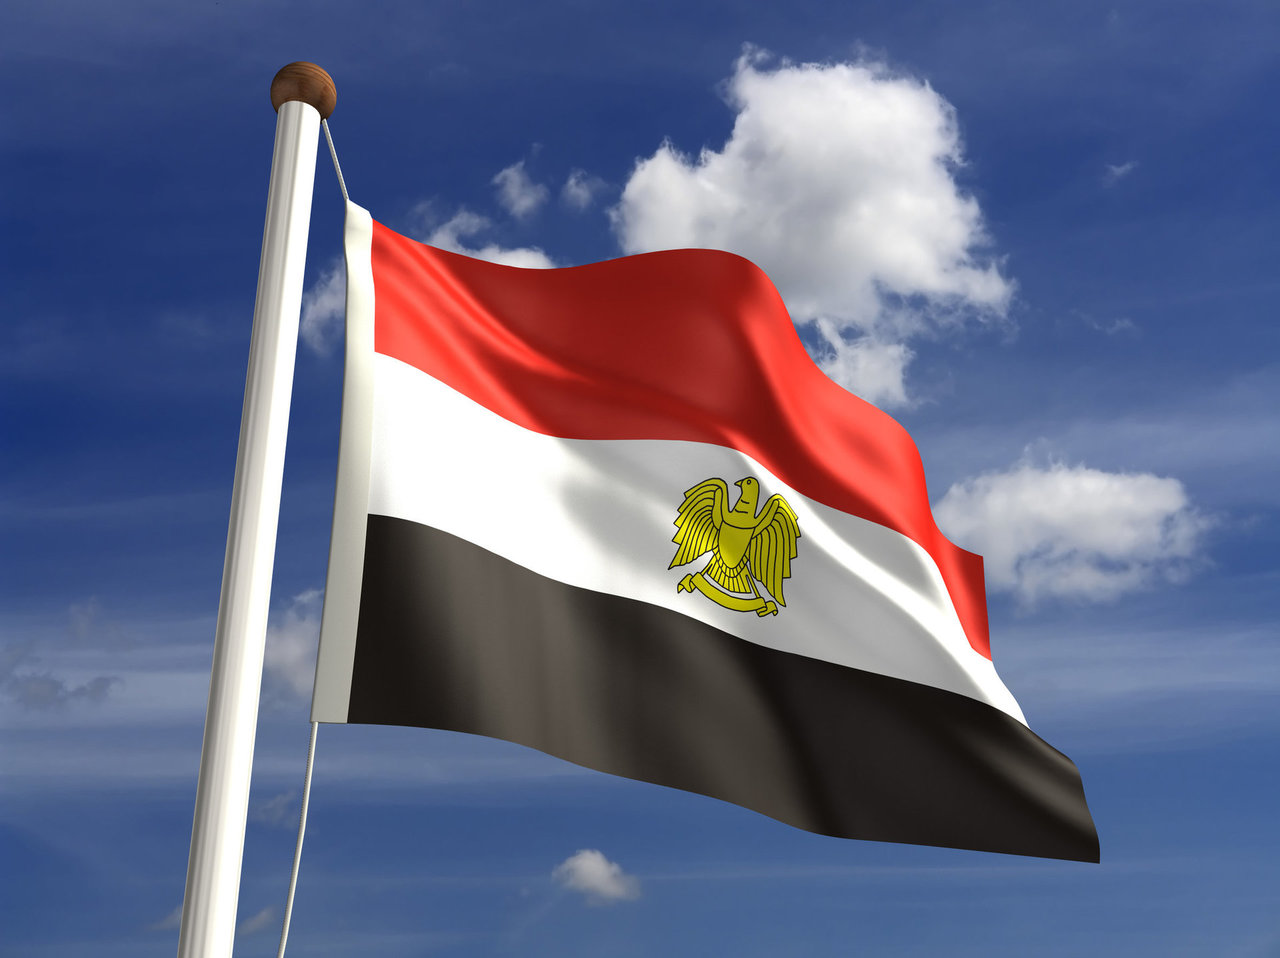 Egipte apvirtus autobusui žuvo trys žmonės, įskaitant du lenkus